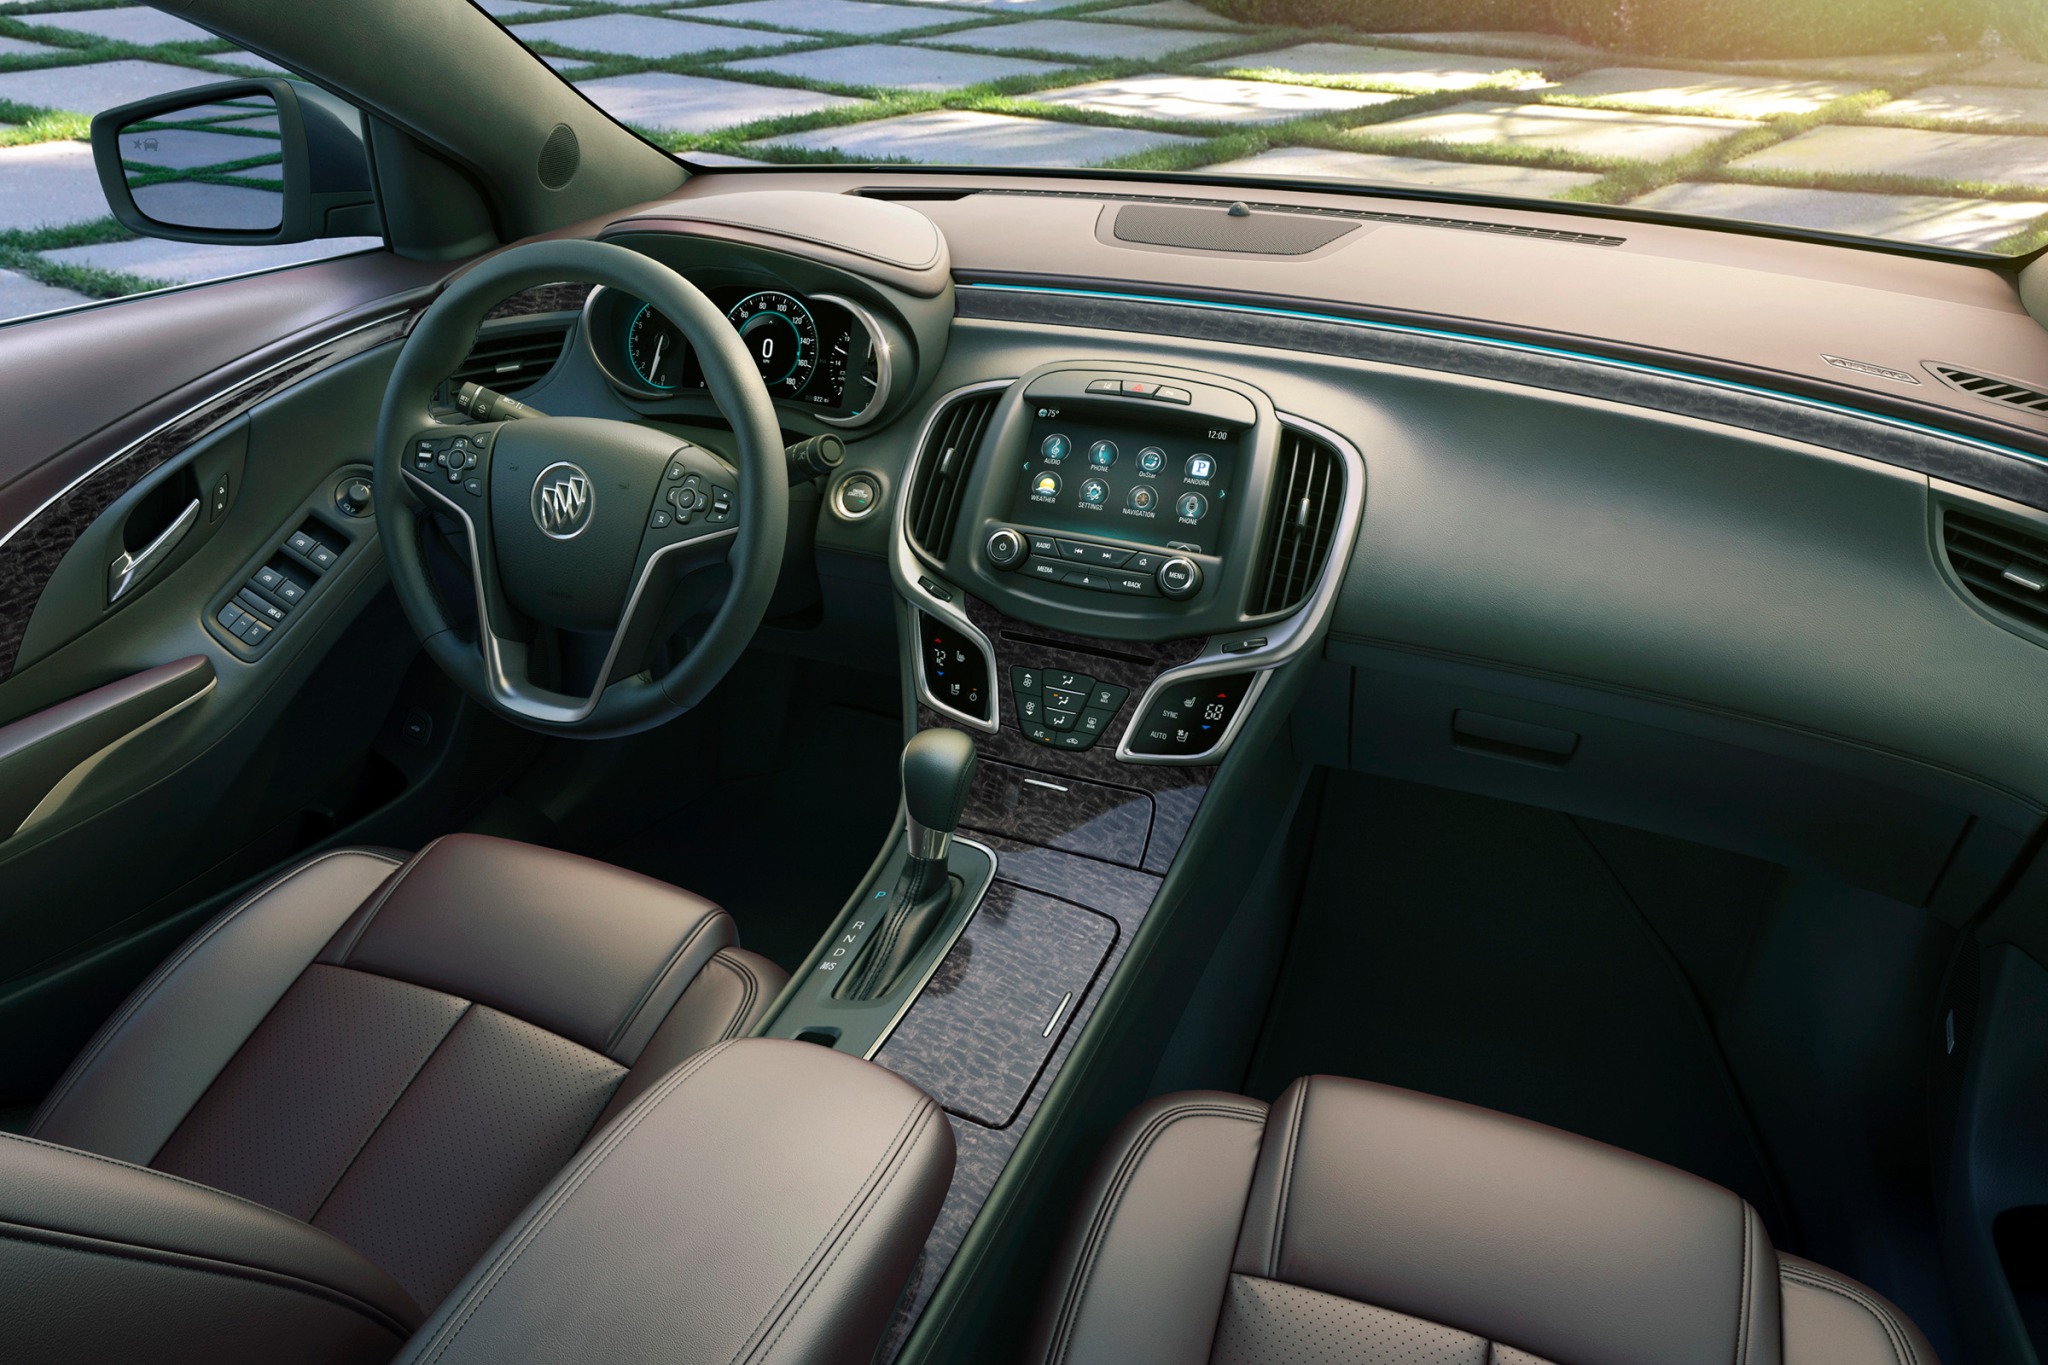 2014 Buick LaCrosse Premium 2 Group Sedan Interior